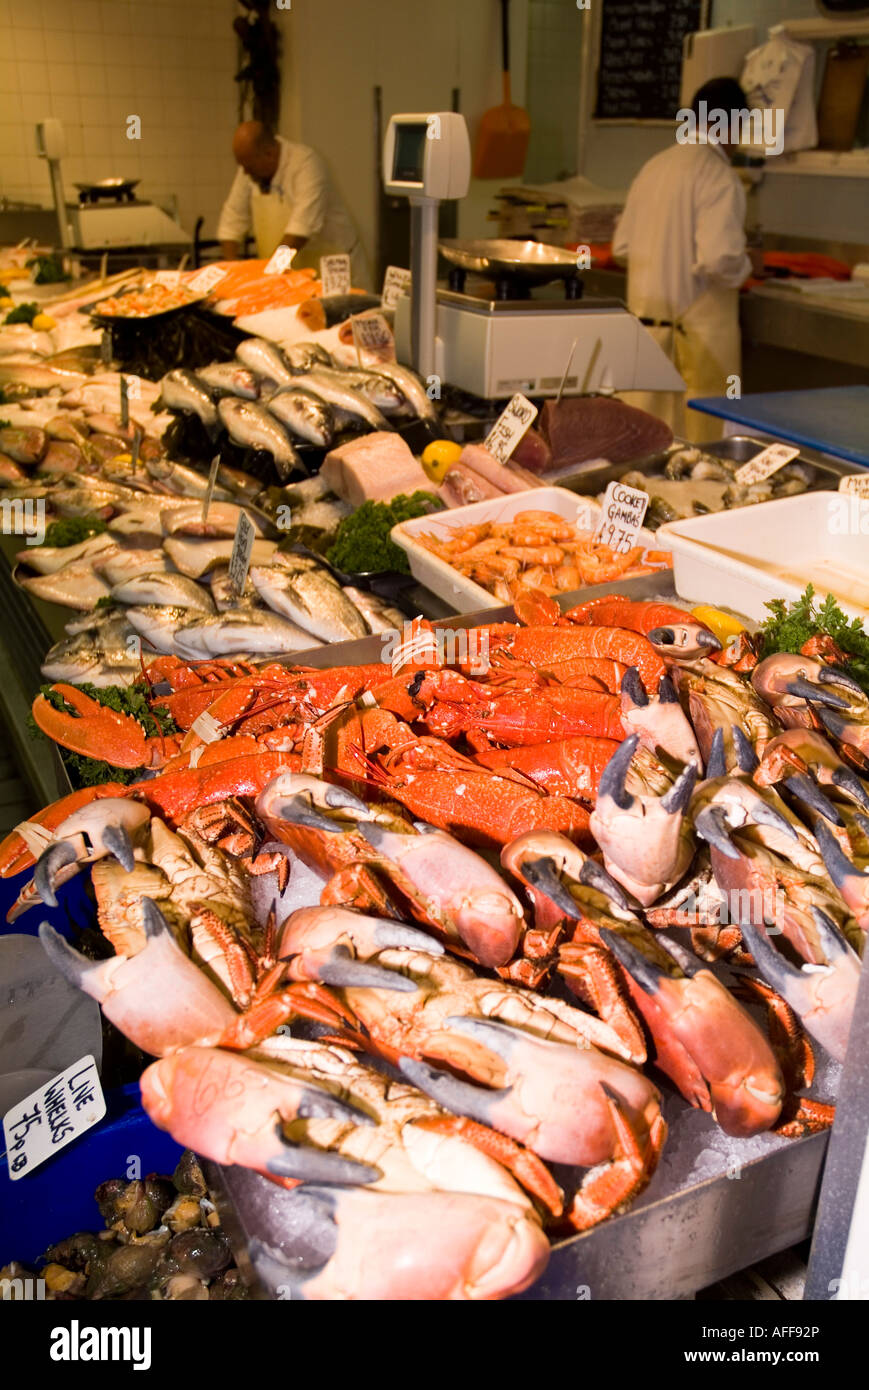 dh marché aux poissons ST HELIER JERSEY îles Anglo-Normandes marché intérieur poissons pêcheurs décrochage de fruits de mer crabes homards nourriture de l'île Banque D'Images